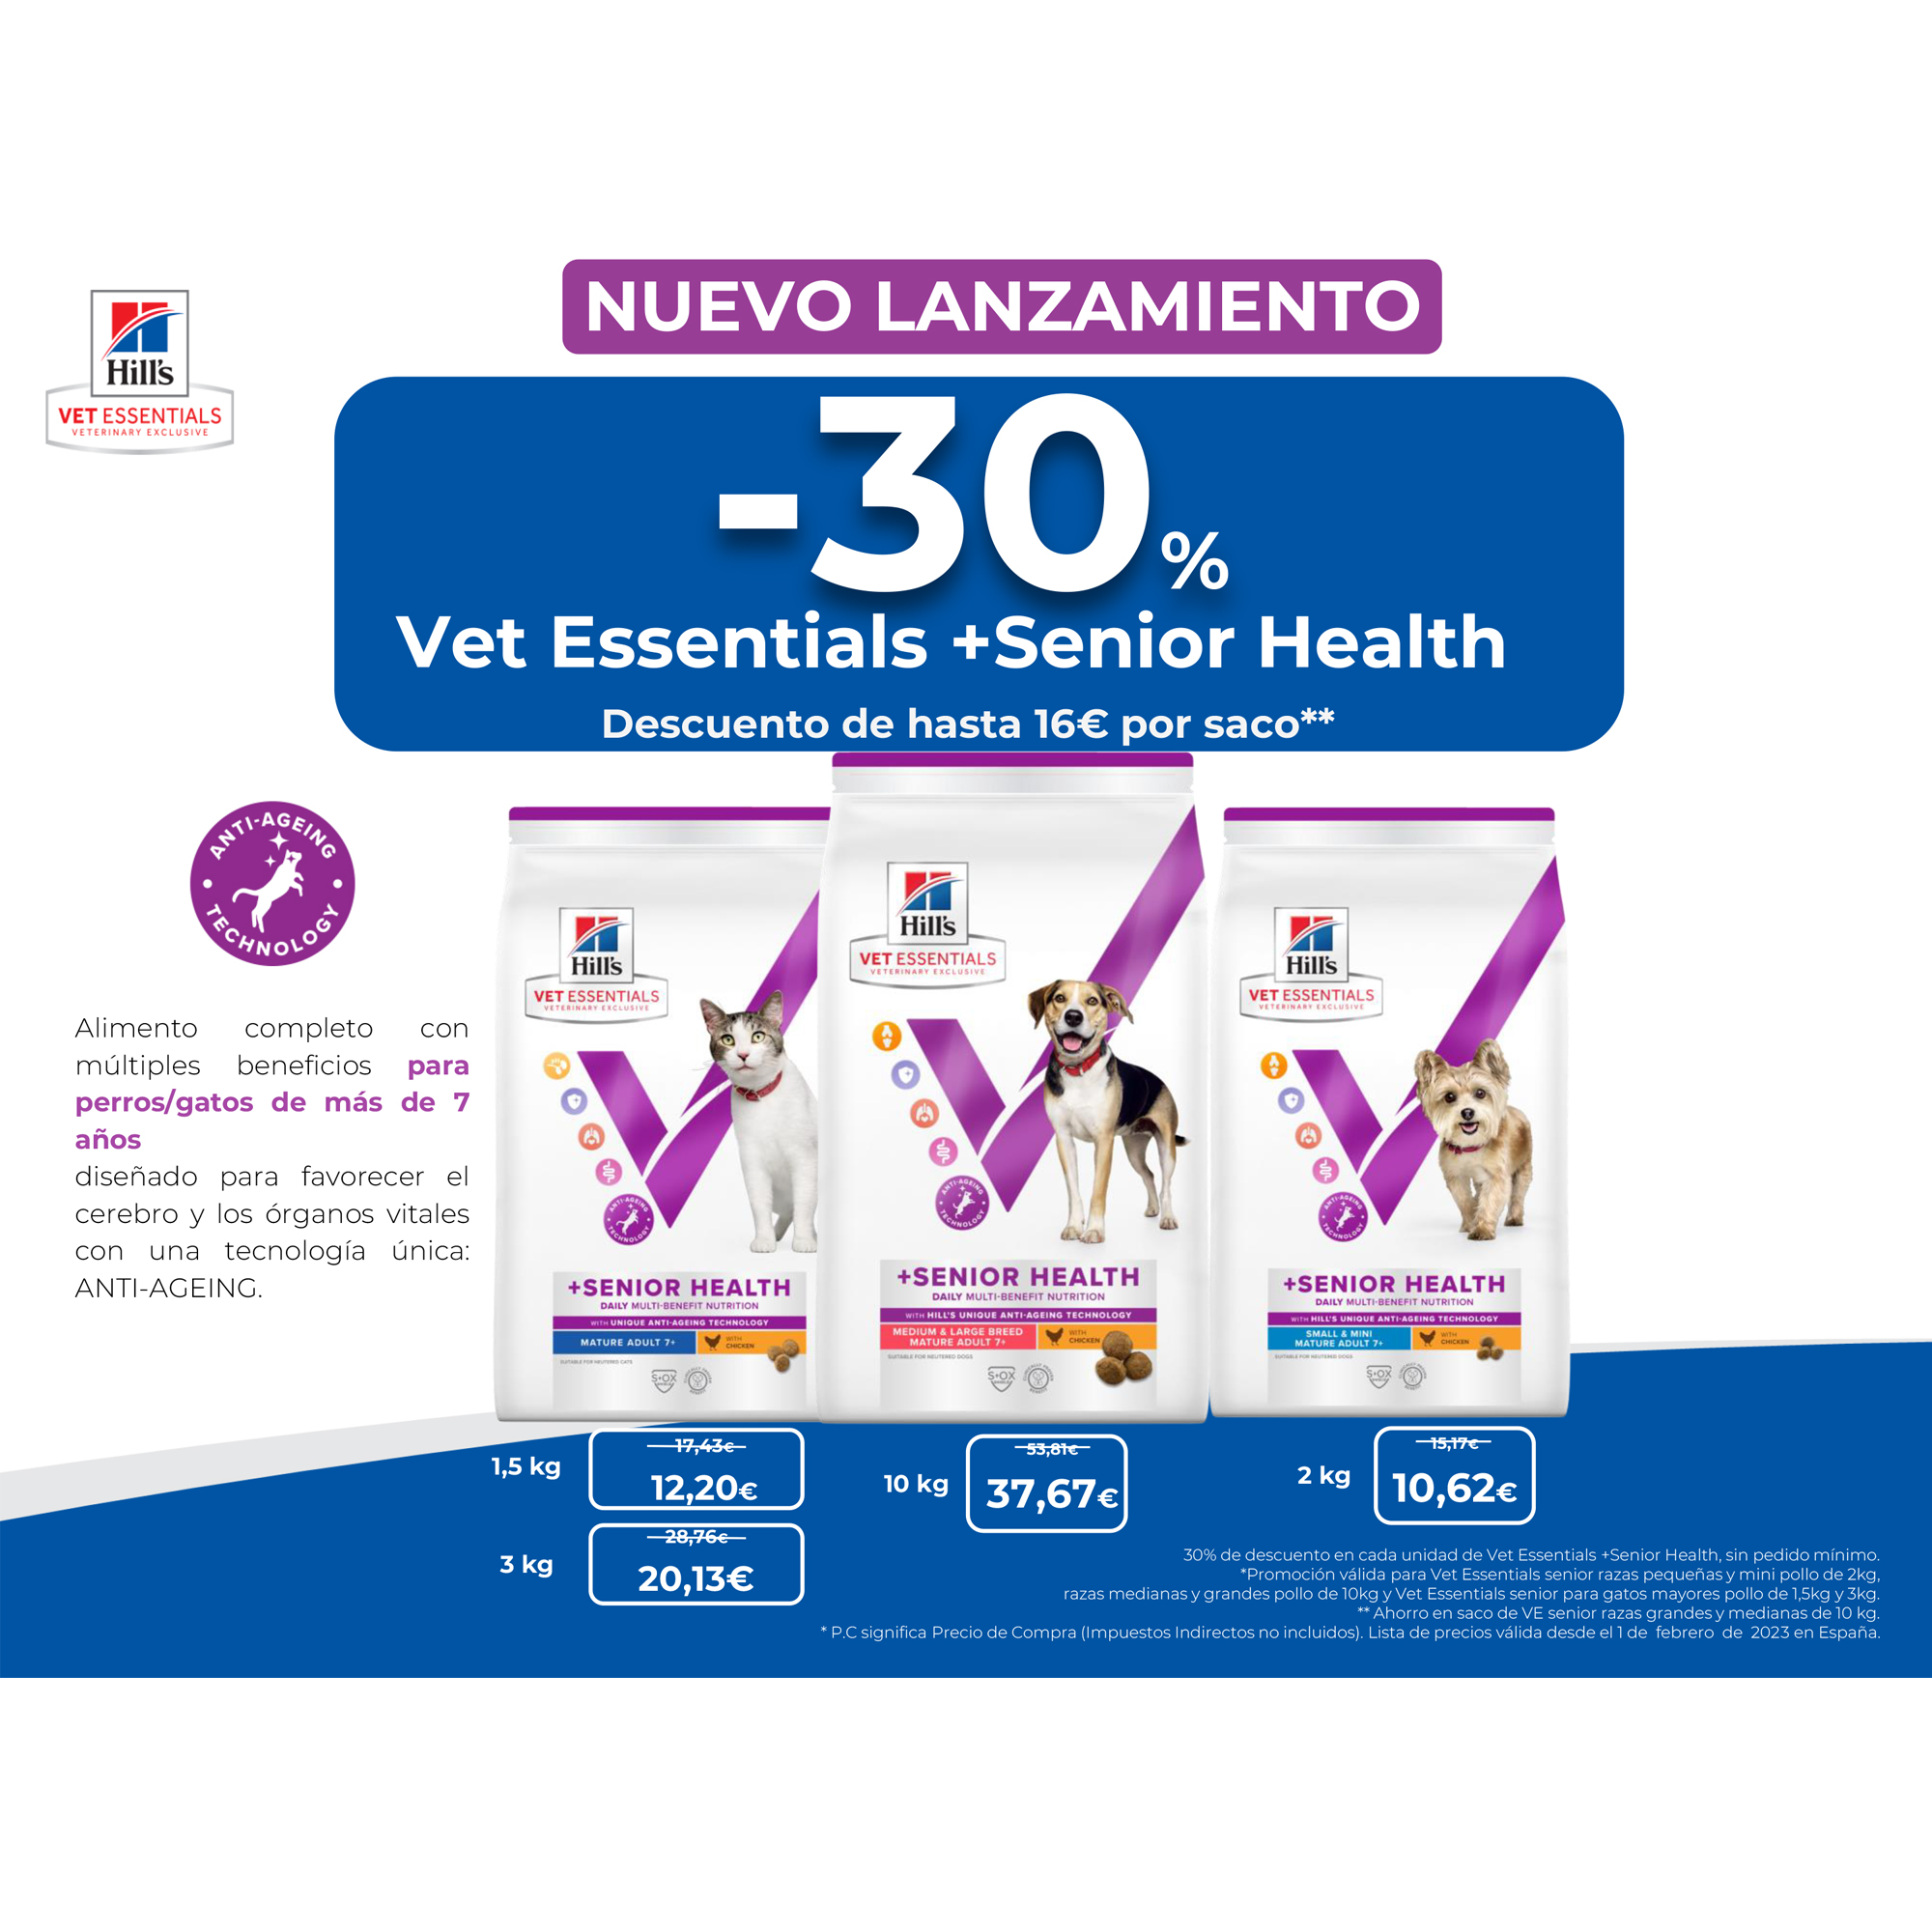 NUEVO LANZAMIENTO -30% Vet Essentials +Senior Health